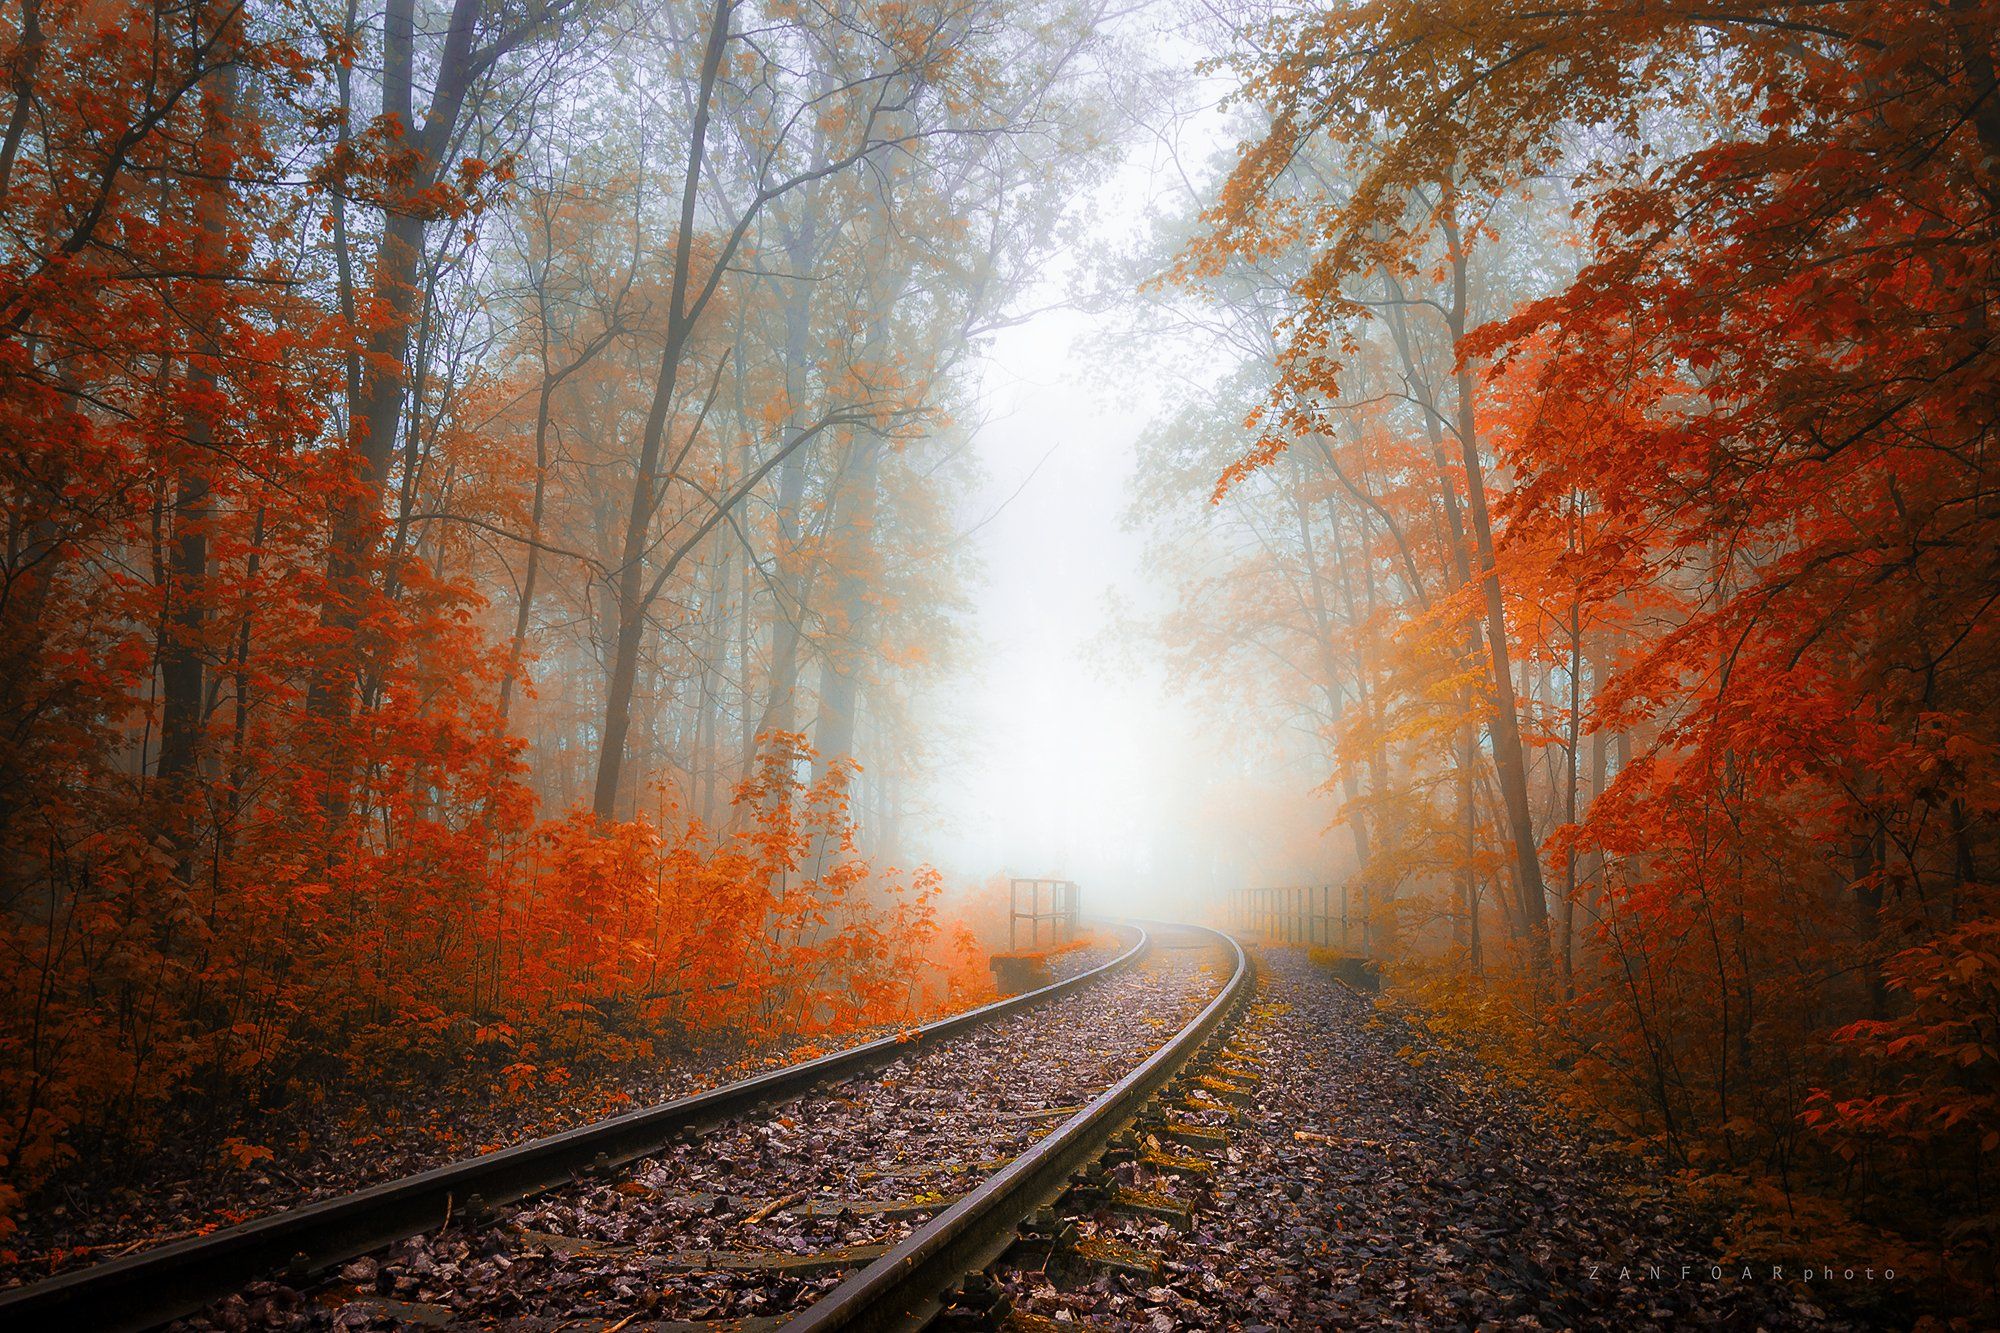 осень,   железная дорога,   деревья, туман, ностальгия, дымка, листья, цвета осени, чешская республика, тоннель, nikon d7000,zanfoar,чехия, Zanfoar